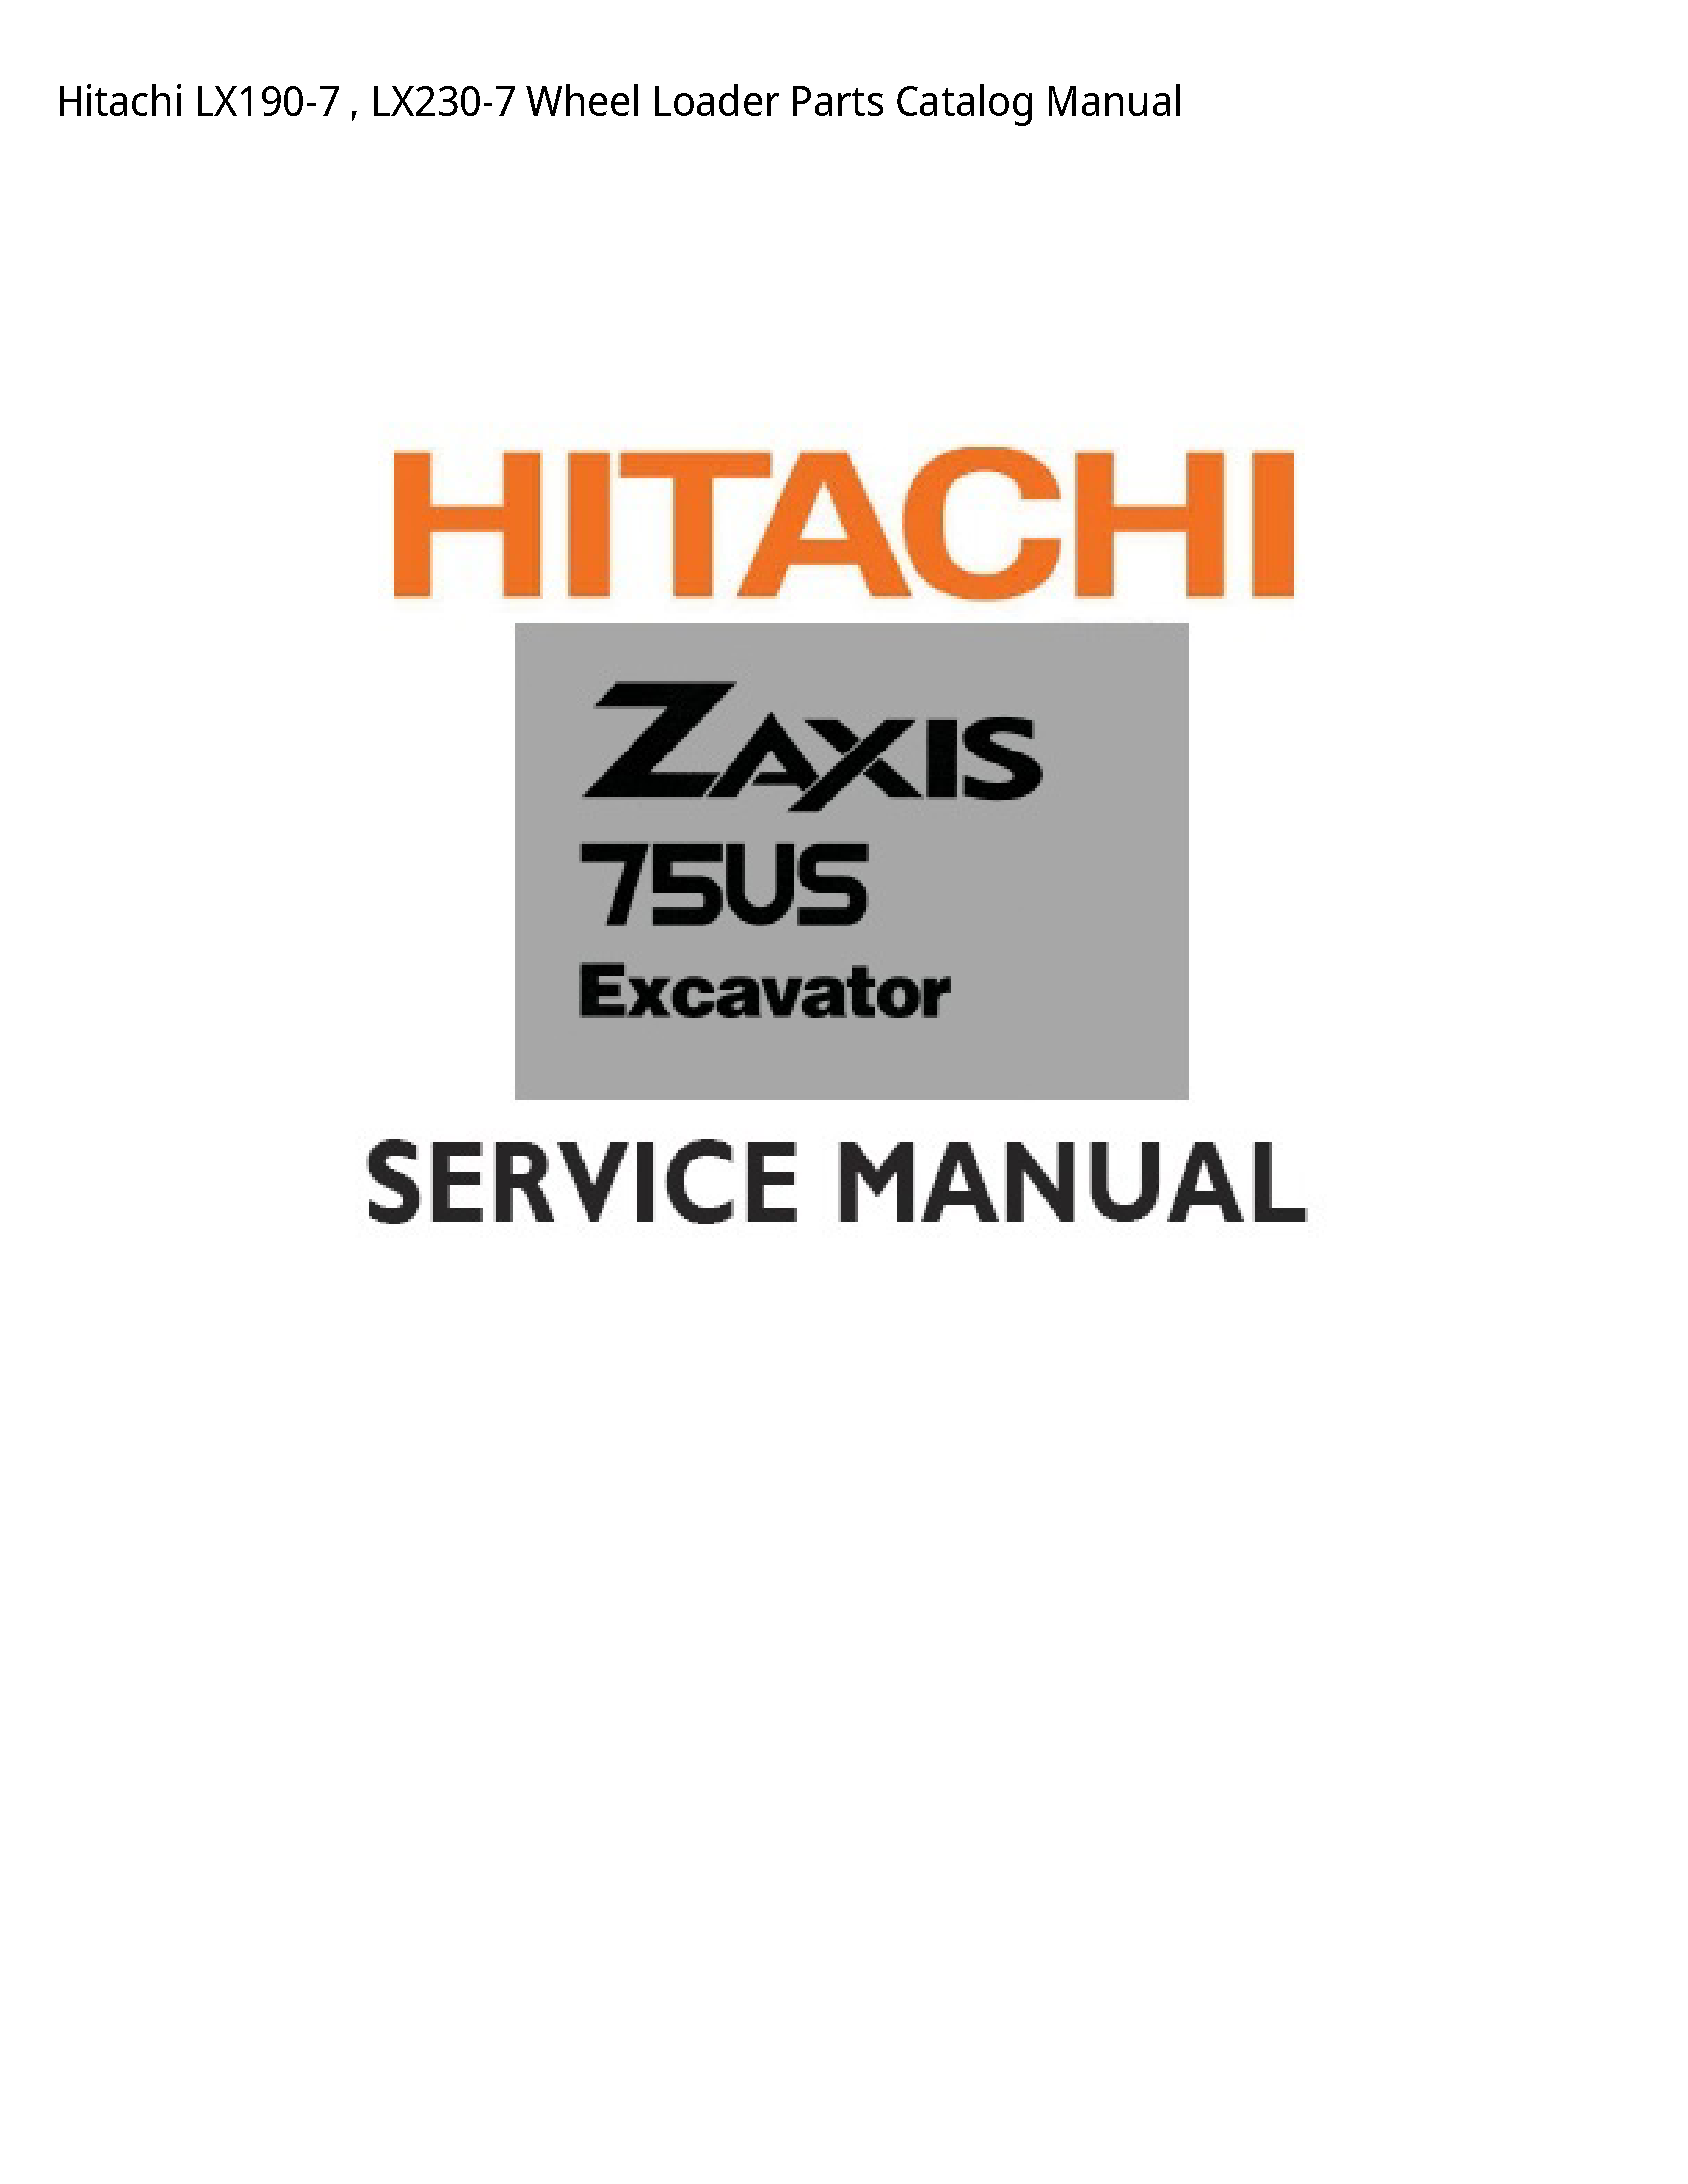 Hitachi LX190-7 Wheel Loader Parts Catalog manual